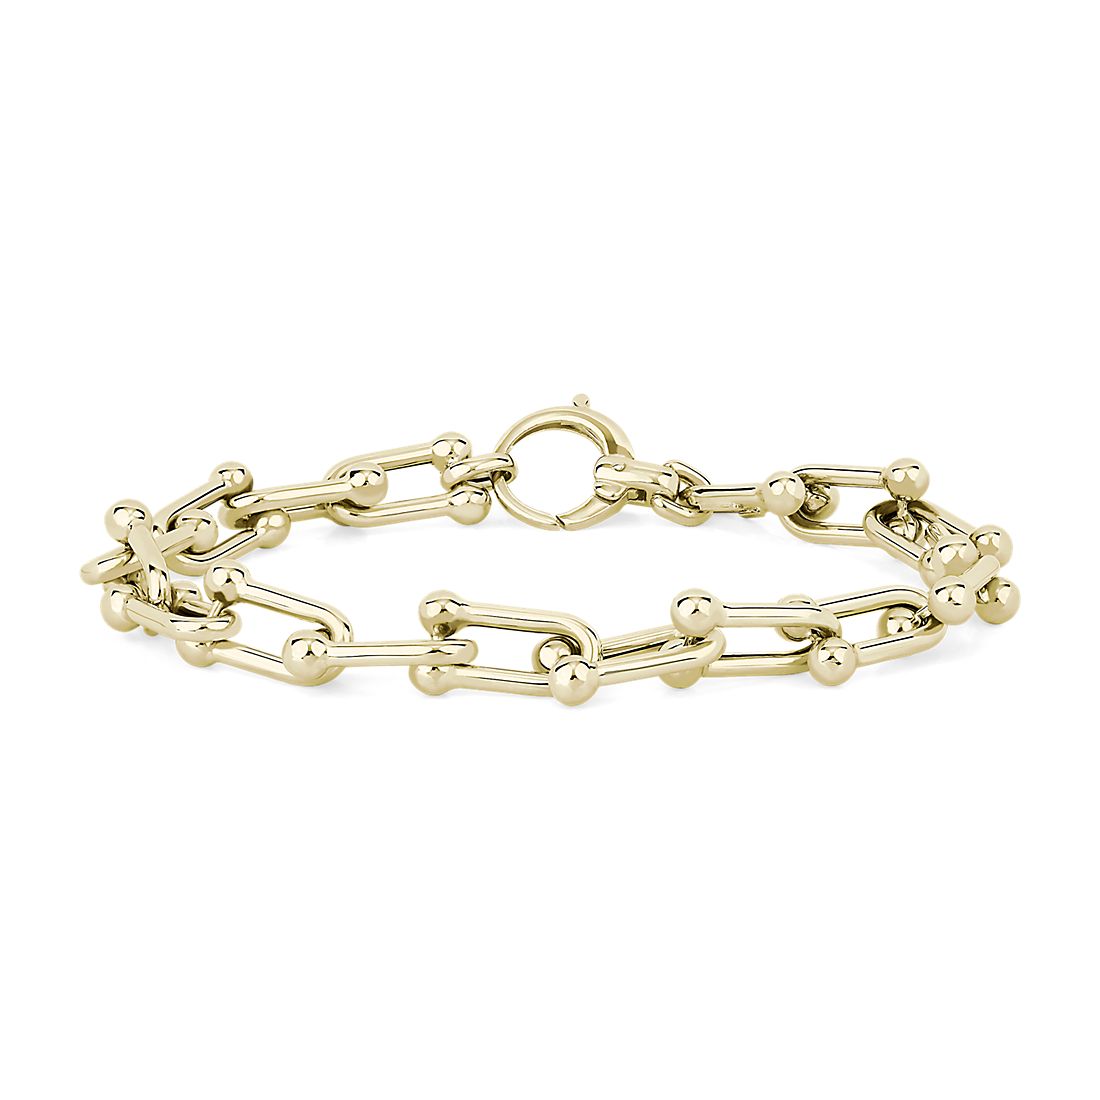 8" Shiny Fancy Links Bracelet in 14k Yellow Gold